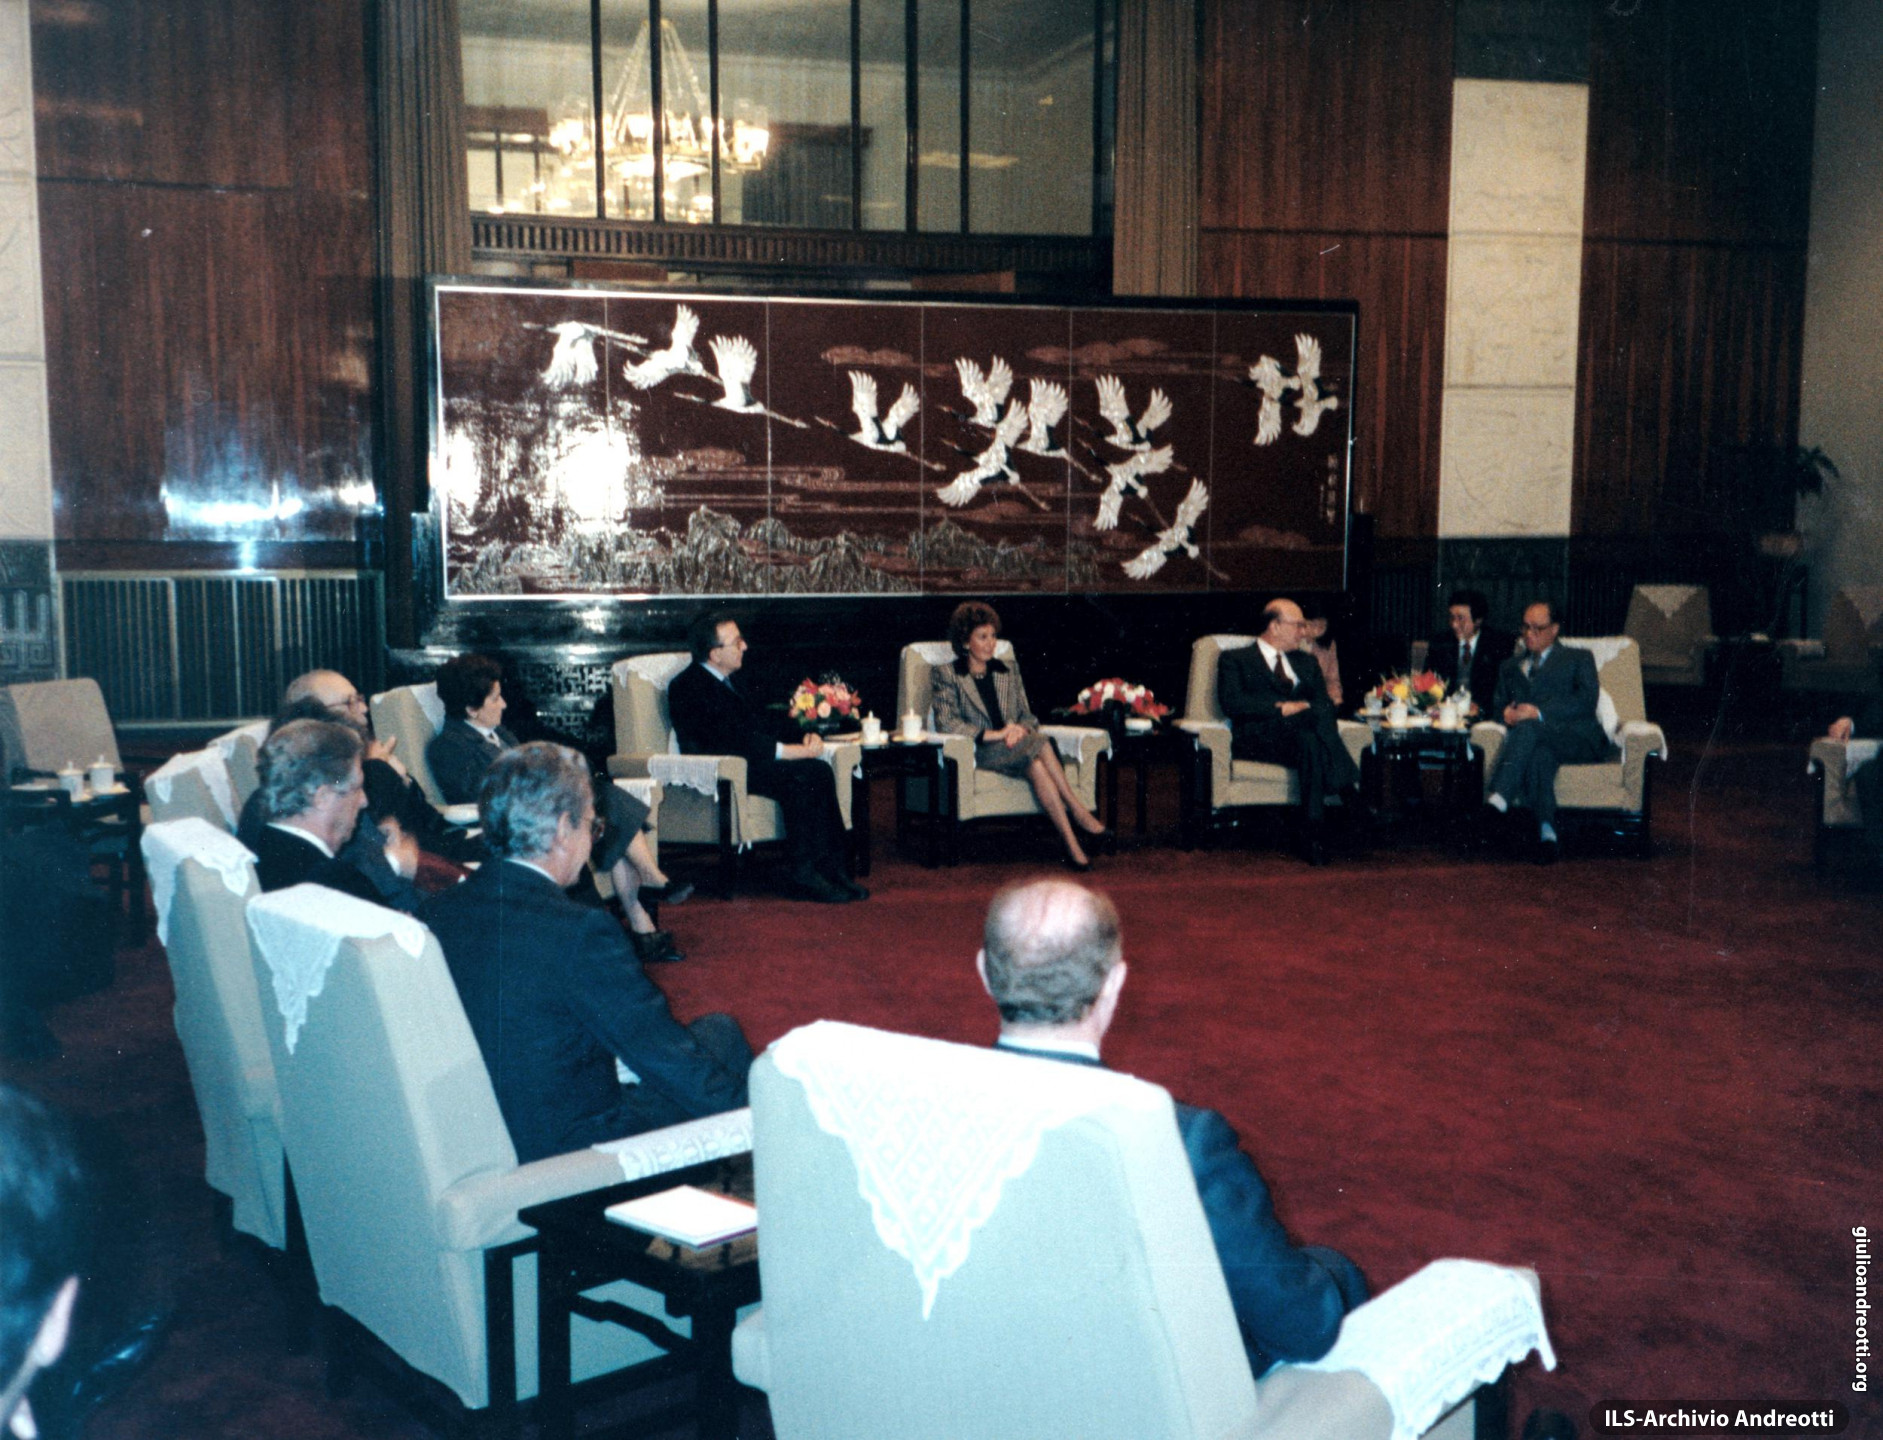 31 ottobre 1986. Visita ufficiale a Pechino. Il Presidente del Consiglio Craxi e il Ministro degli Esteri Andreotti, con le consorti, incontrano il Primo Ministro cinese Zhao Ziyang.